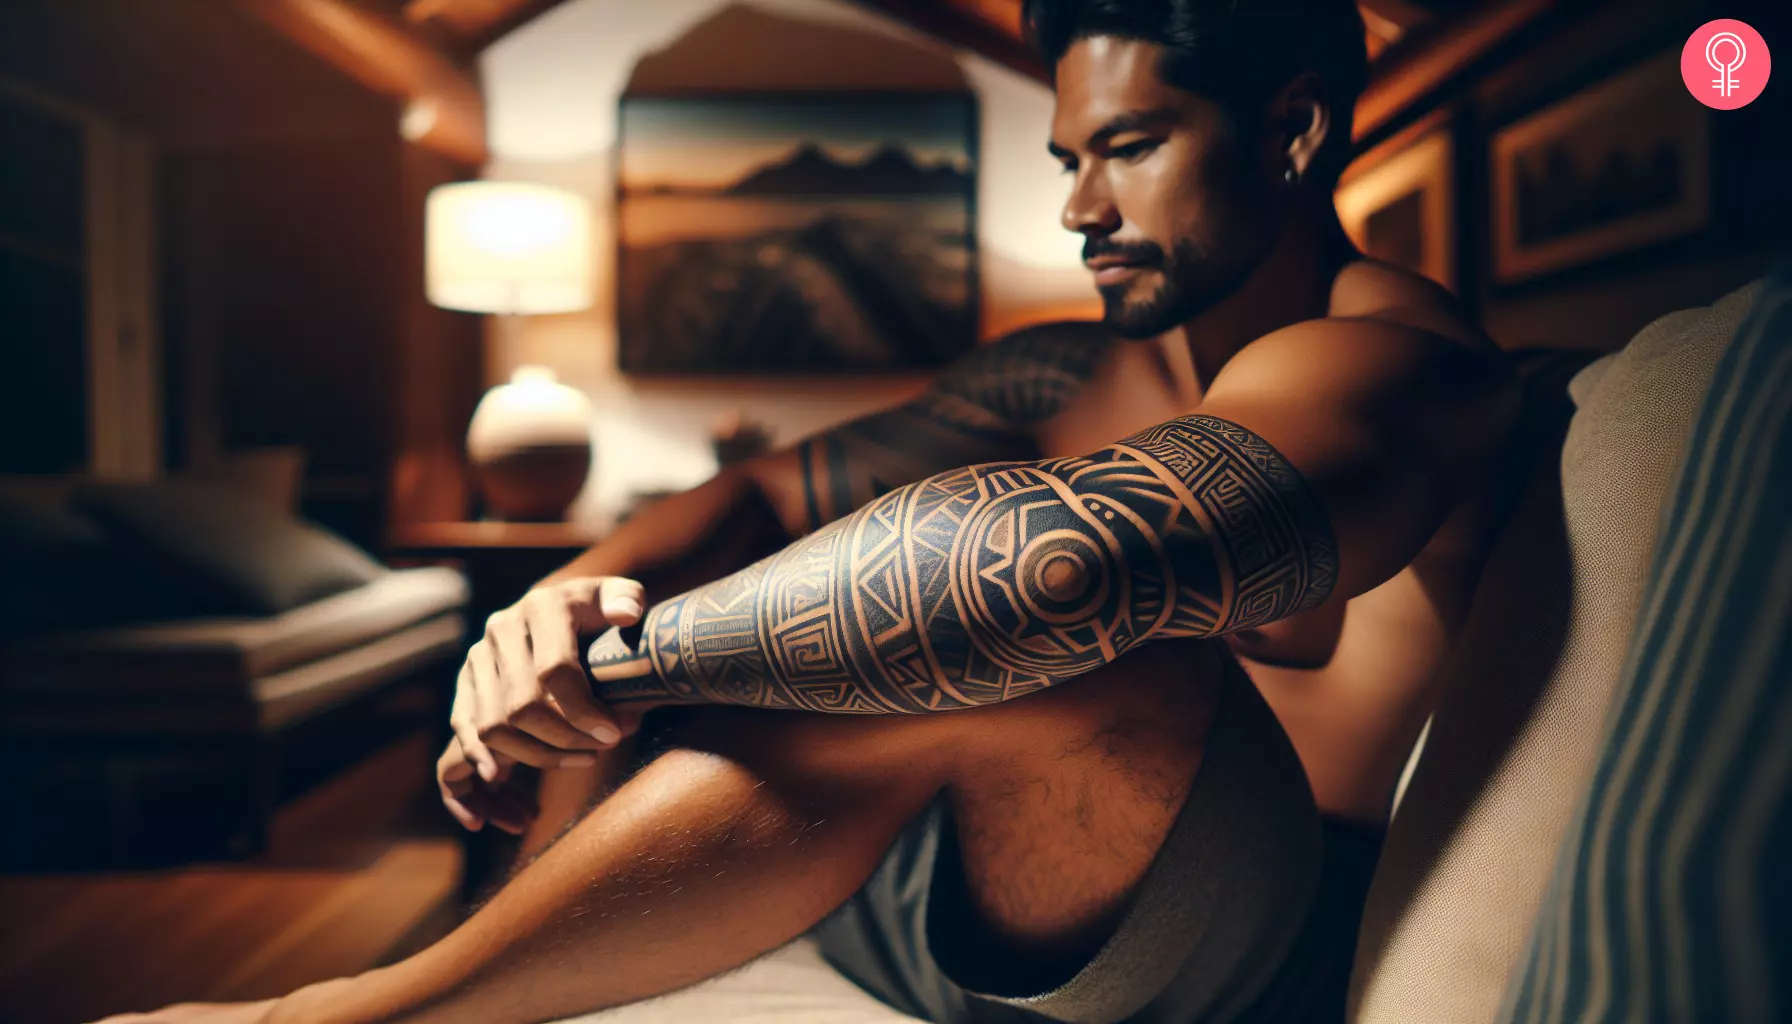 A geometric Mayan tattoo design on a man’s arm